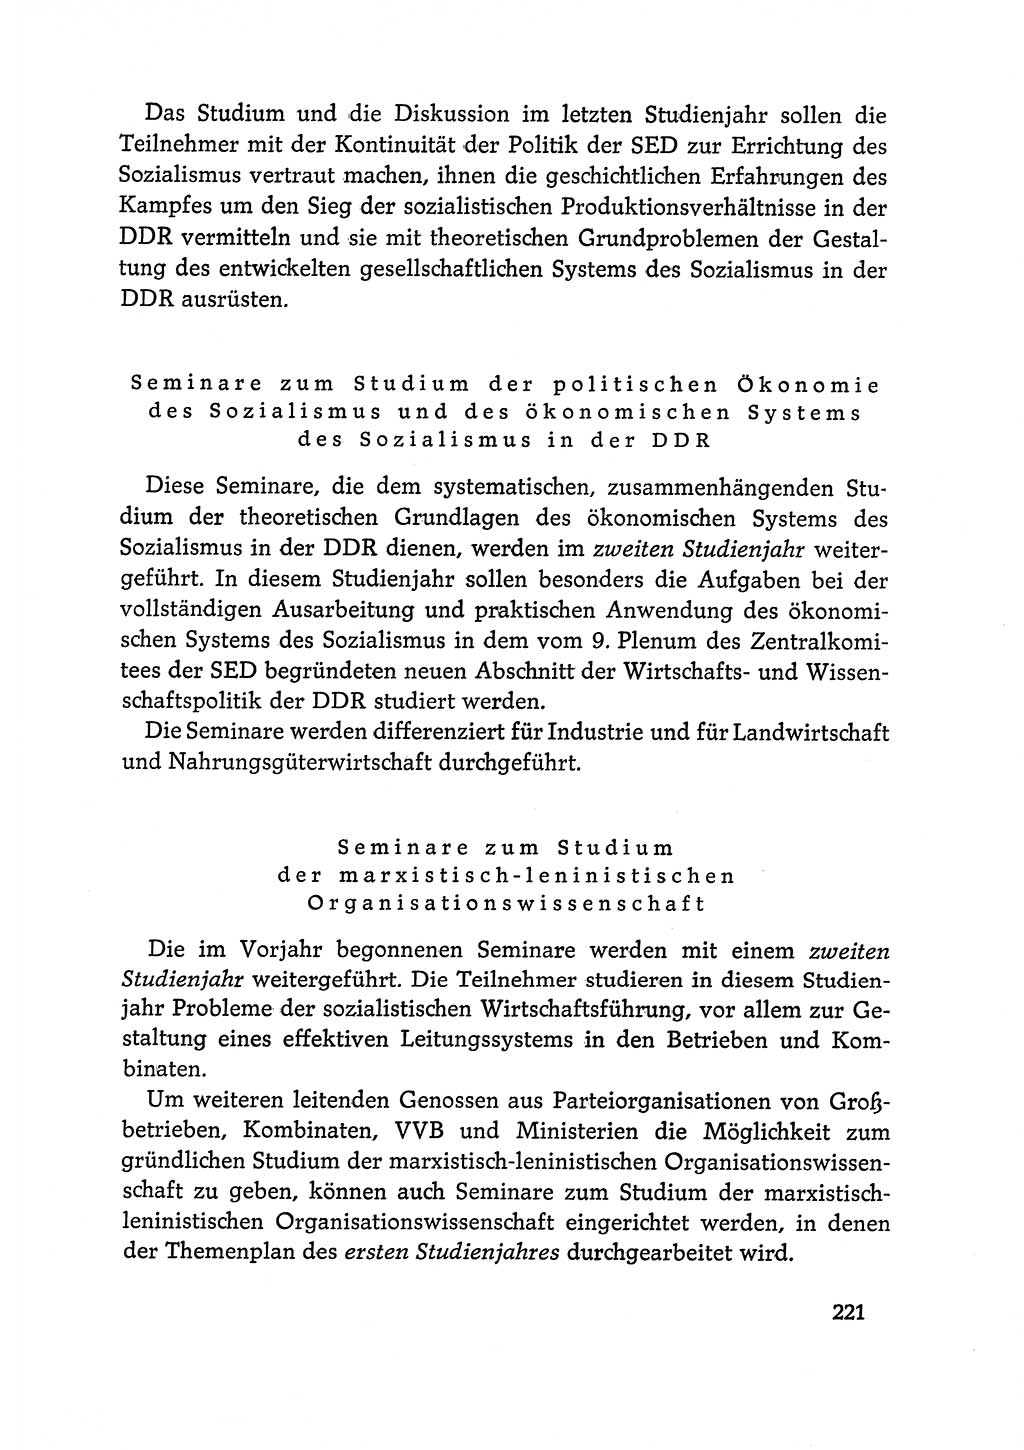 Dokumente der Sozialistischen Einheitspartei Deutschlands (SED) [Deutsche Demokratische Republik (DDR)] 1968-1969, Seite 221 (Dok. SED DDR 1968-1969, S. 221)